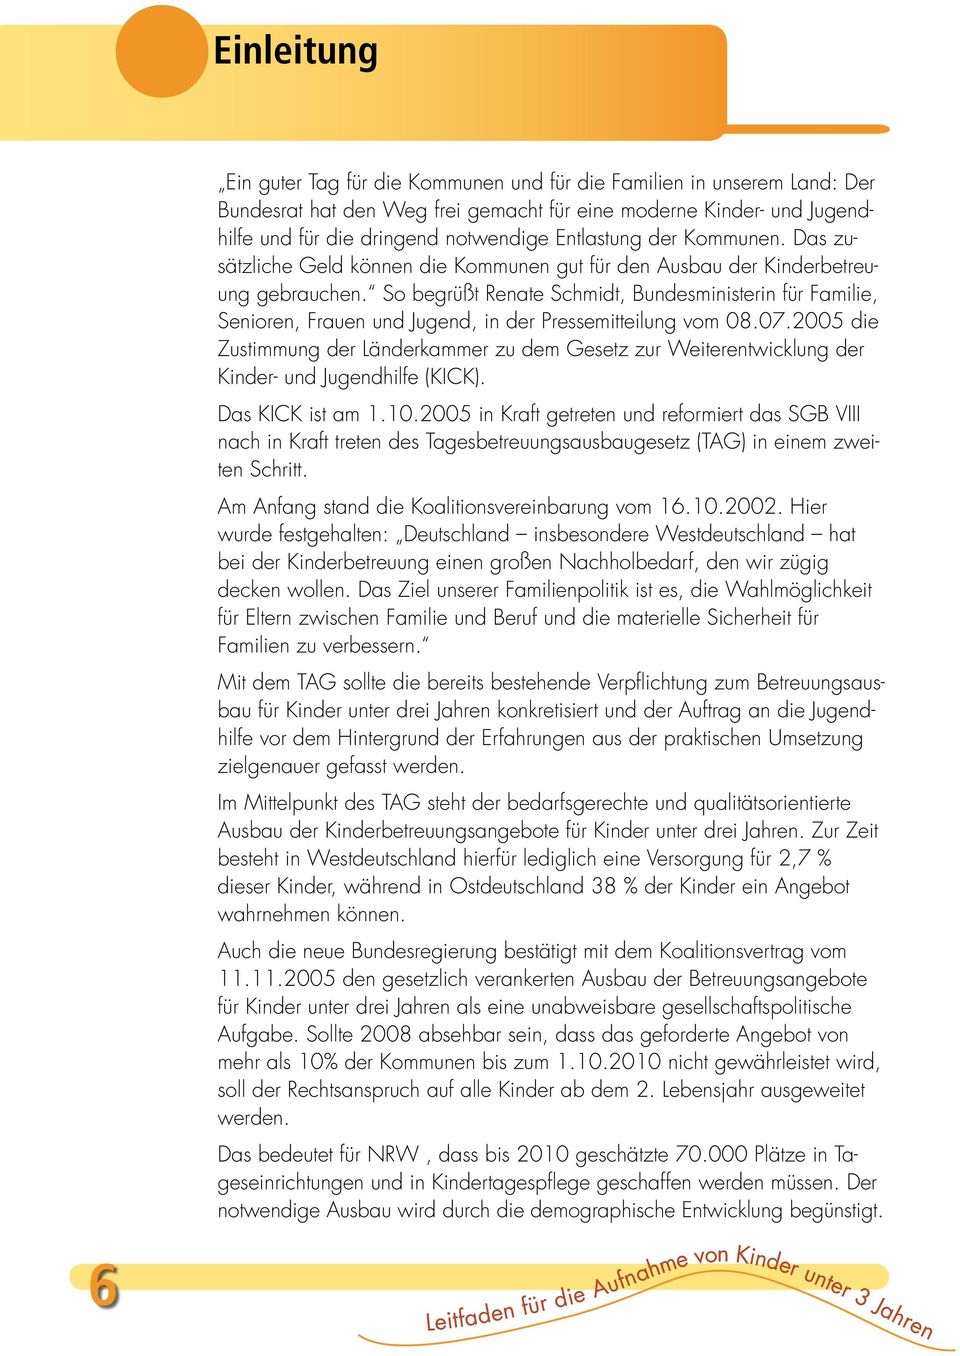 So begrüßt Renate Schmidt, Bundesministerin für Familie, Senioren, Frauen und Jugend, in der Pressemitteilung vom 08.07.